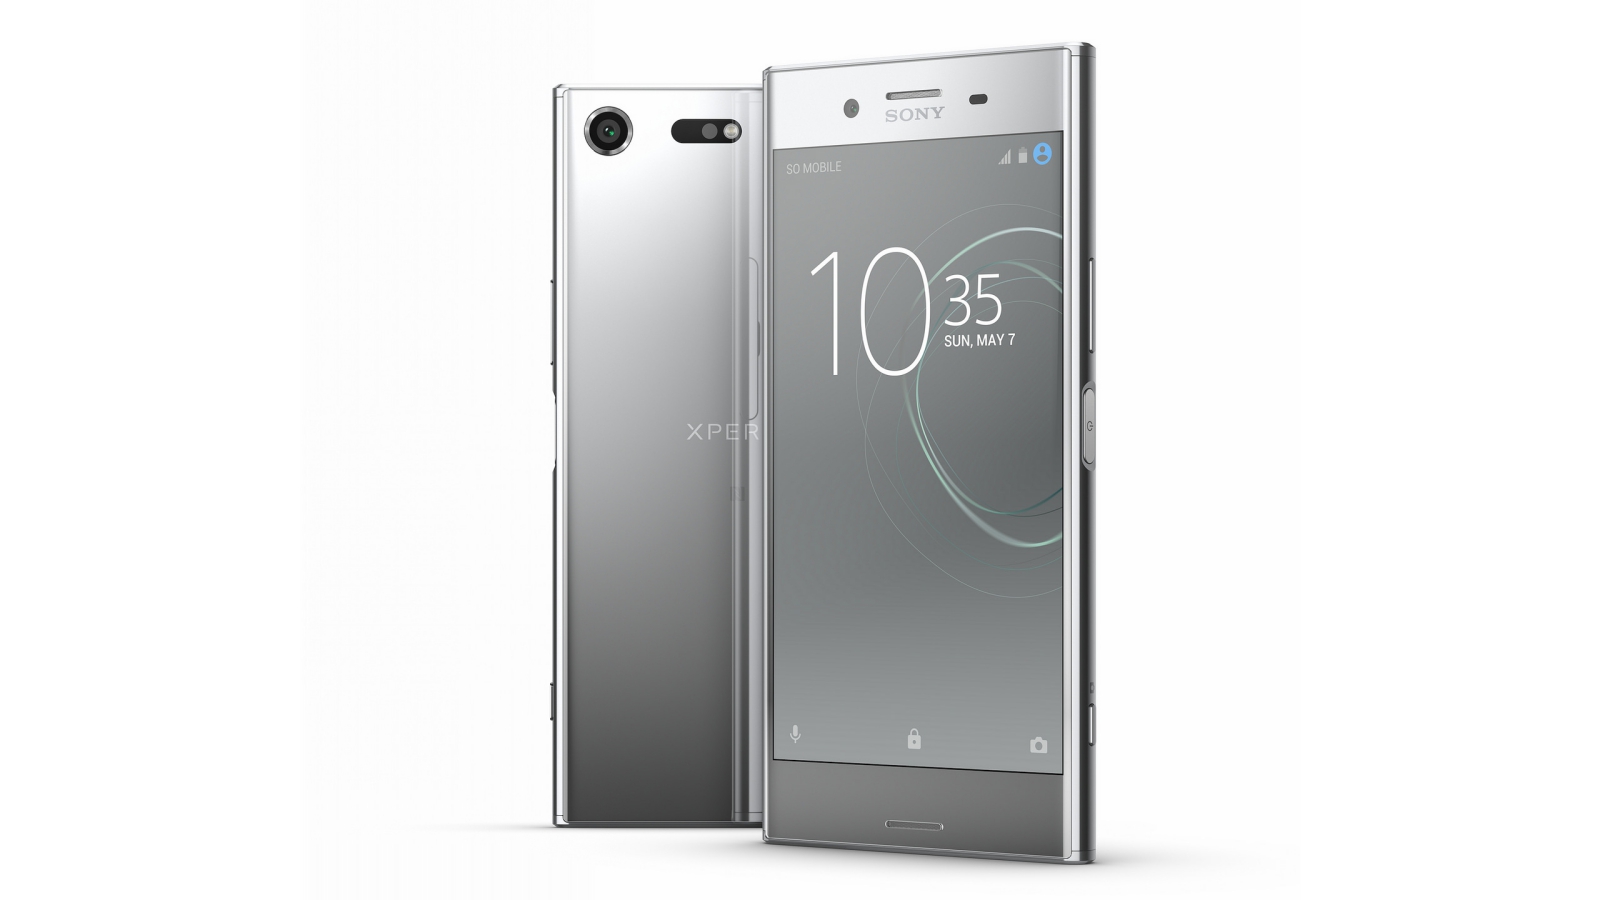 Smartfón Sony Xperia XZ Premium predstavený na MWC 2017